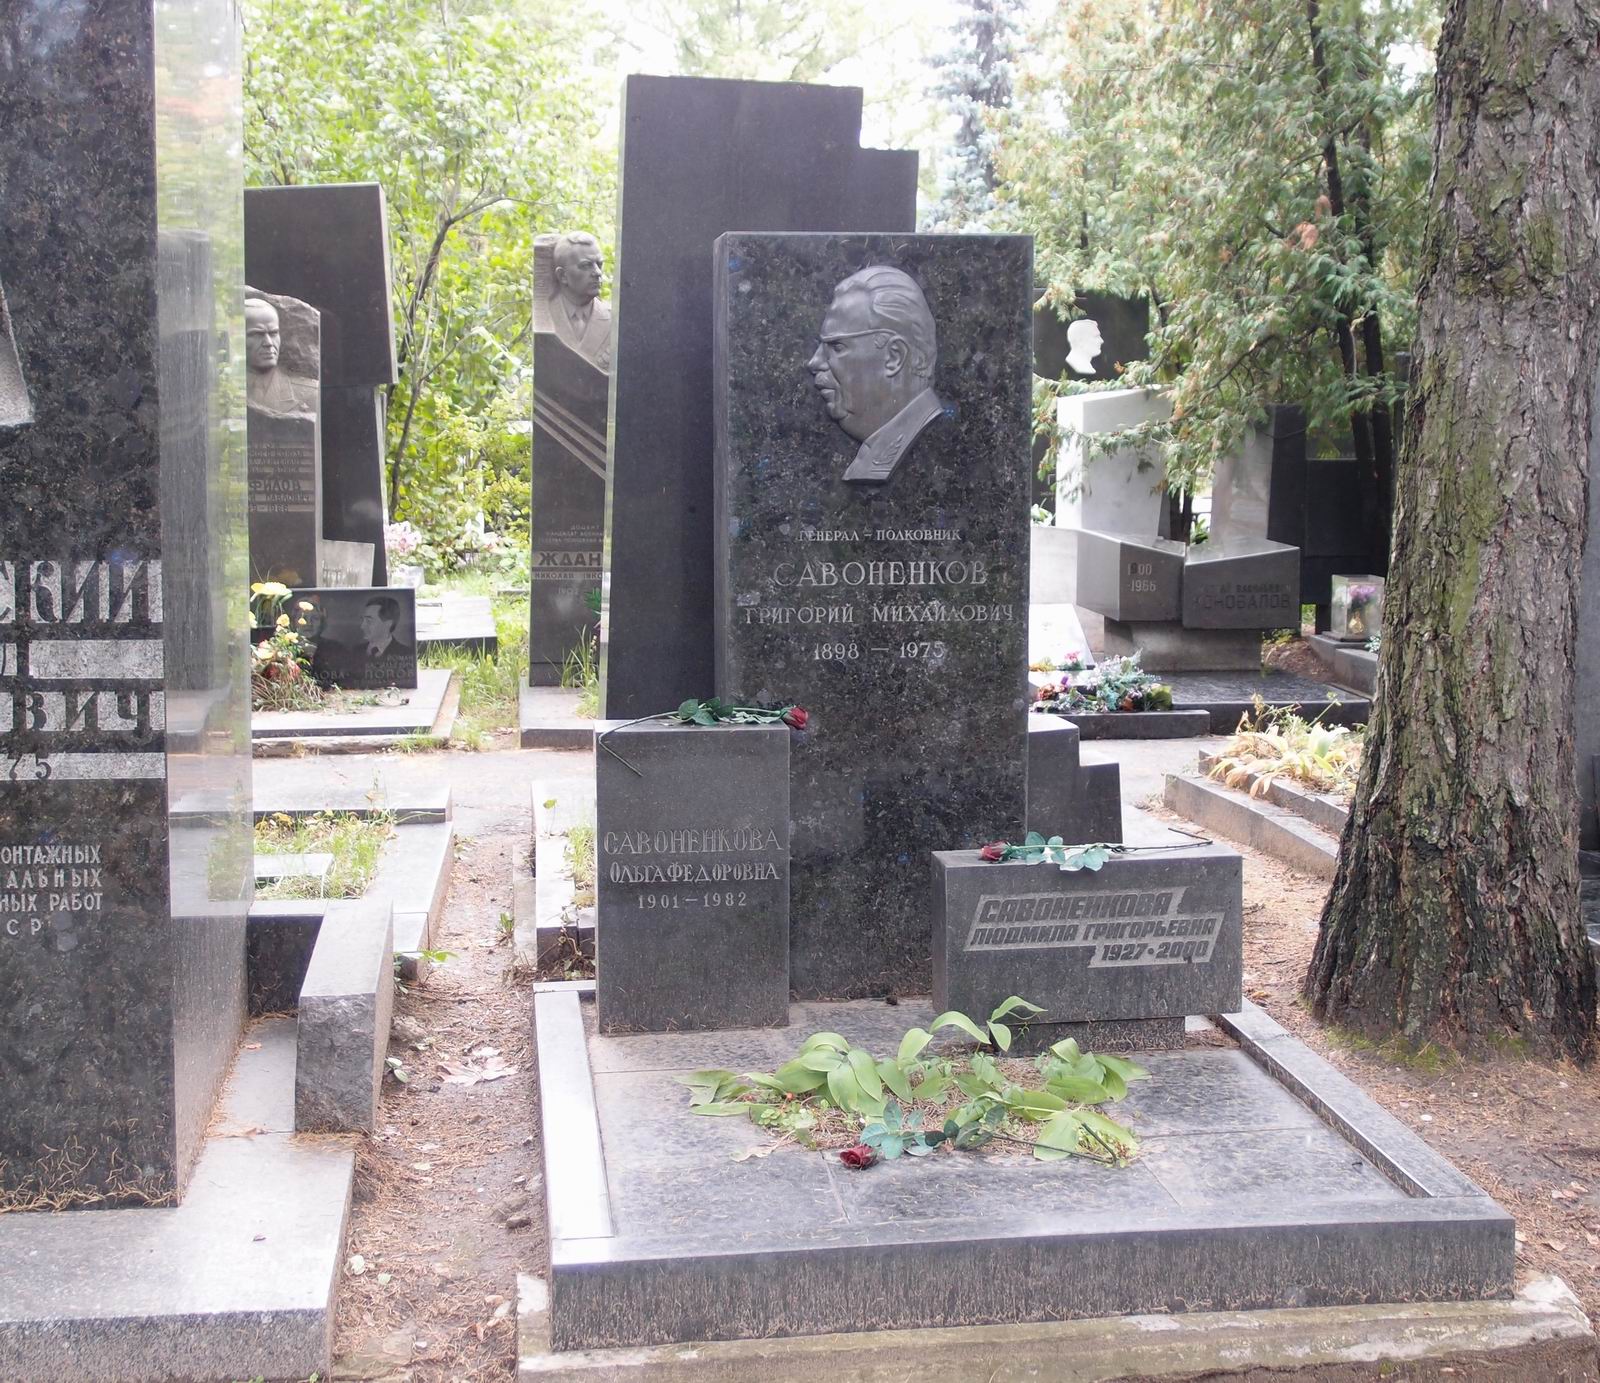 Памятник на могиле Савоненкова Г.М. (1898-1975), на Новодевичьем кладбище (6-28-7).